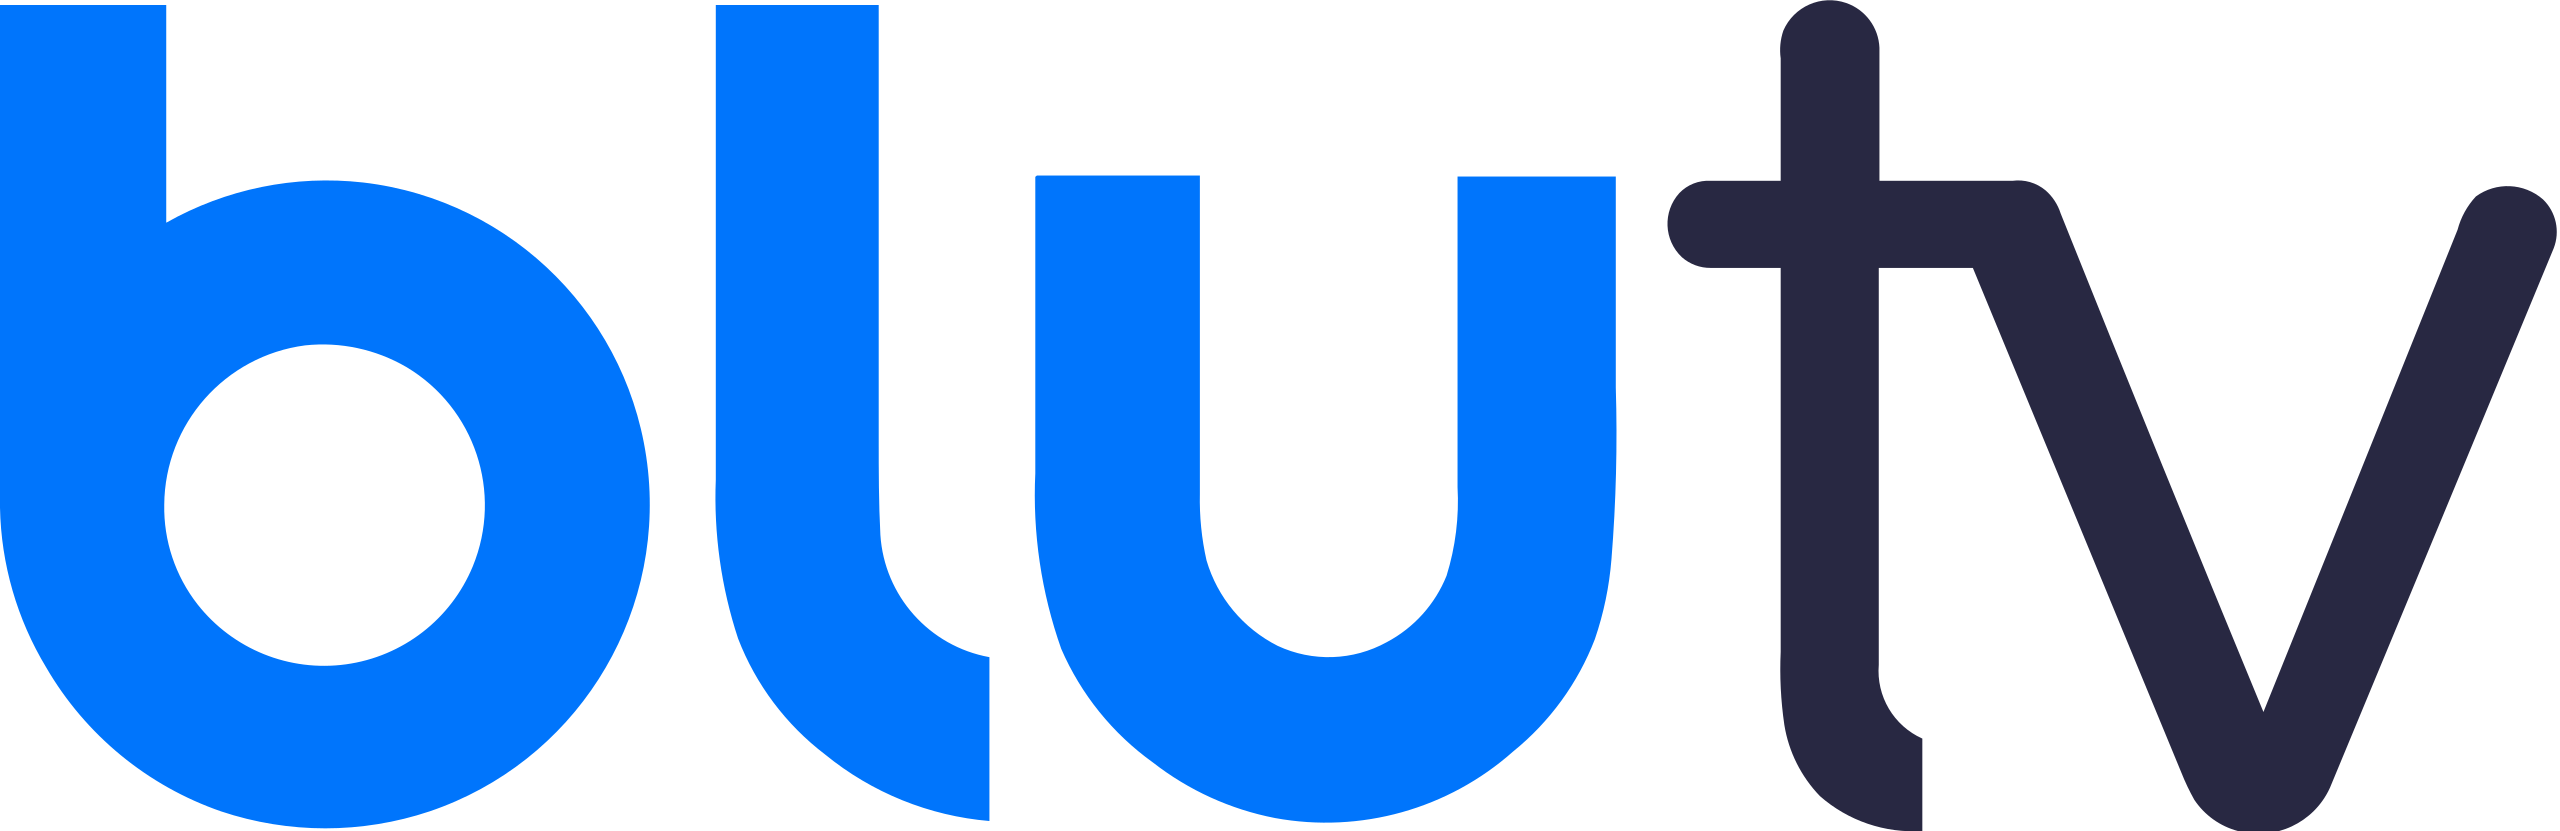 BluTV logo